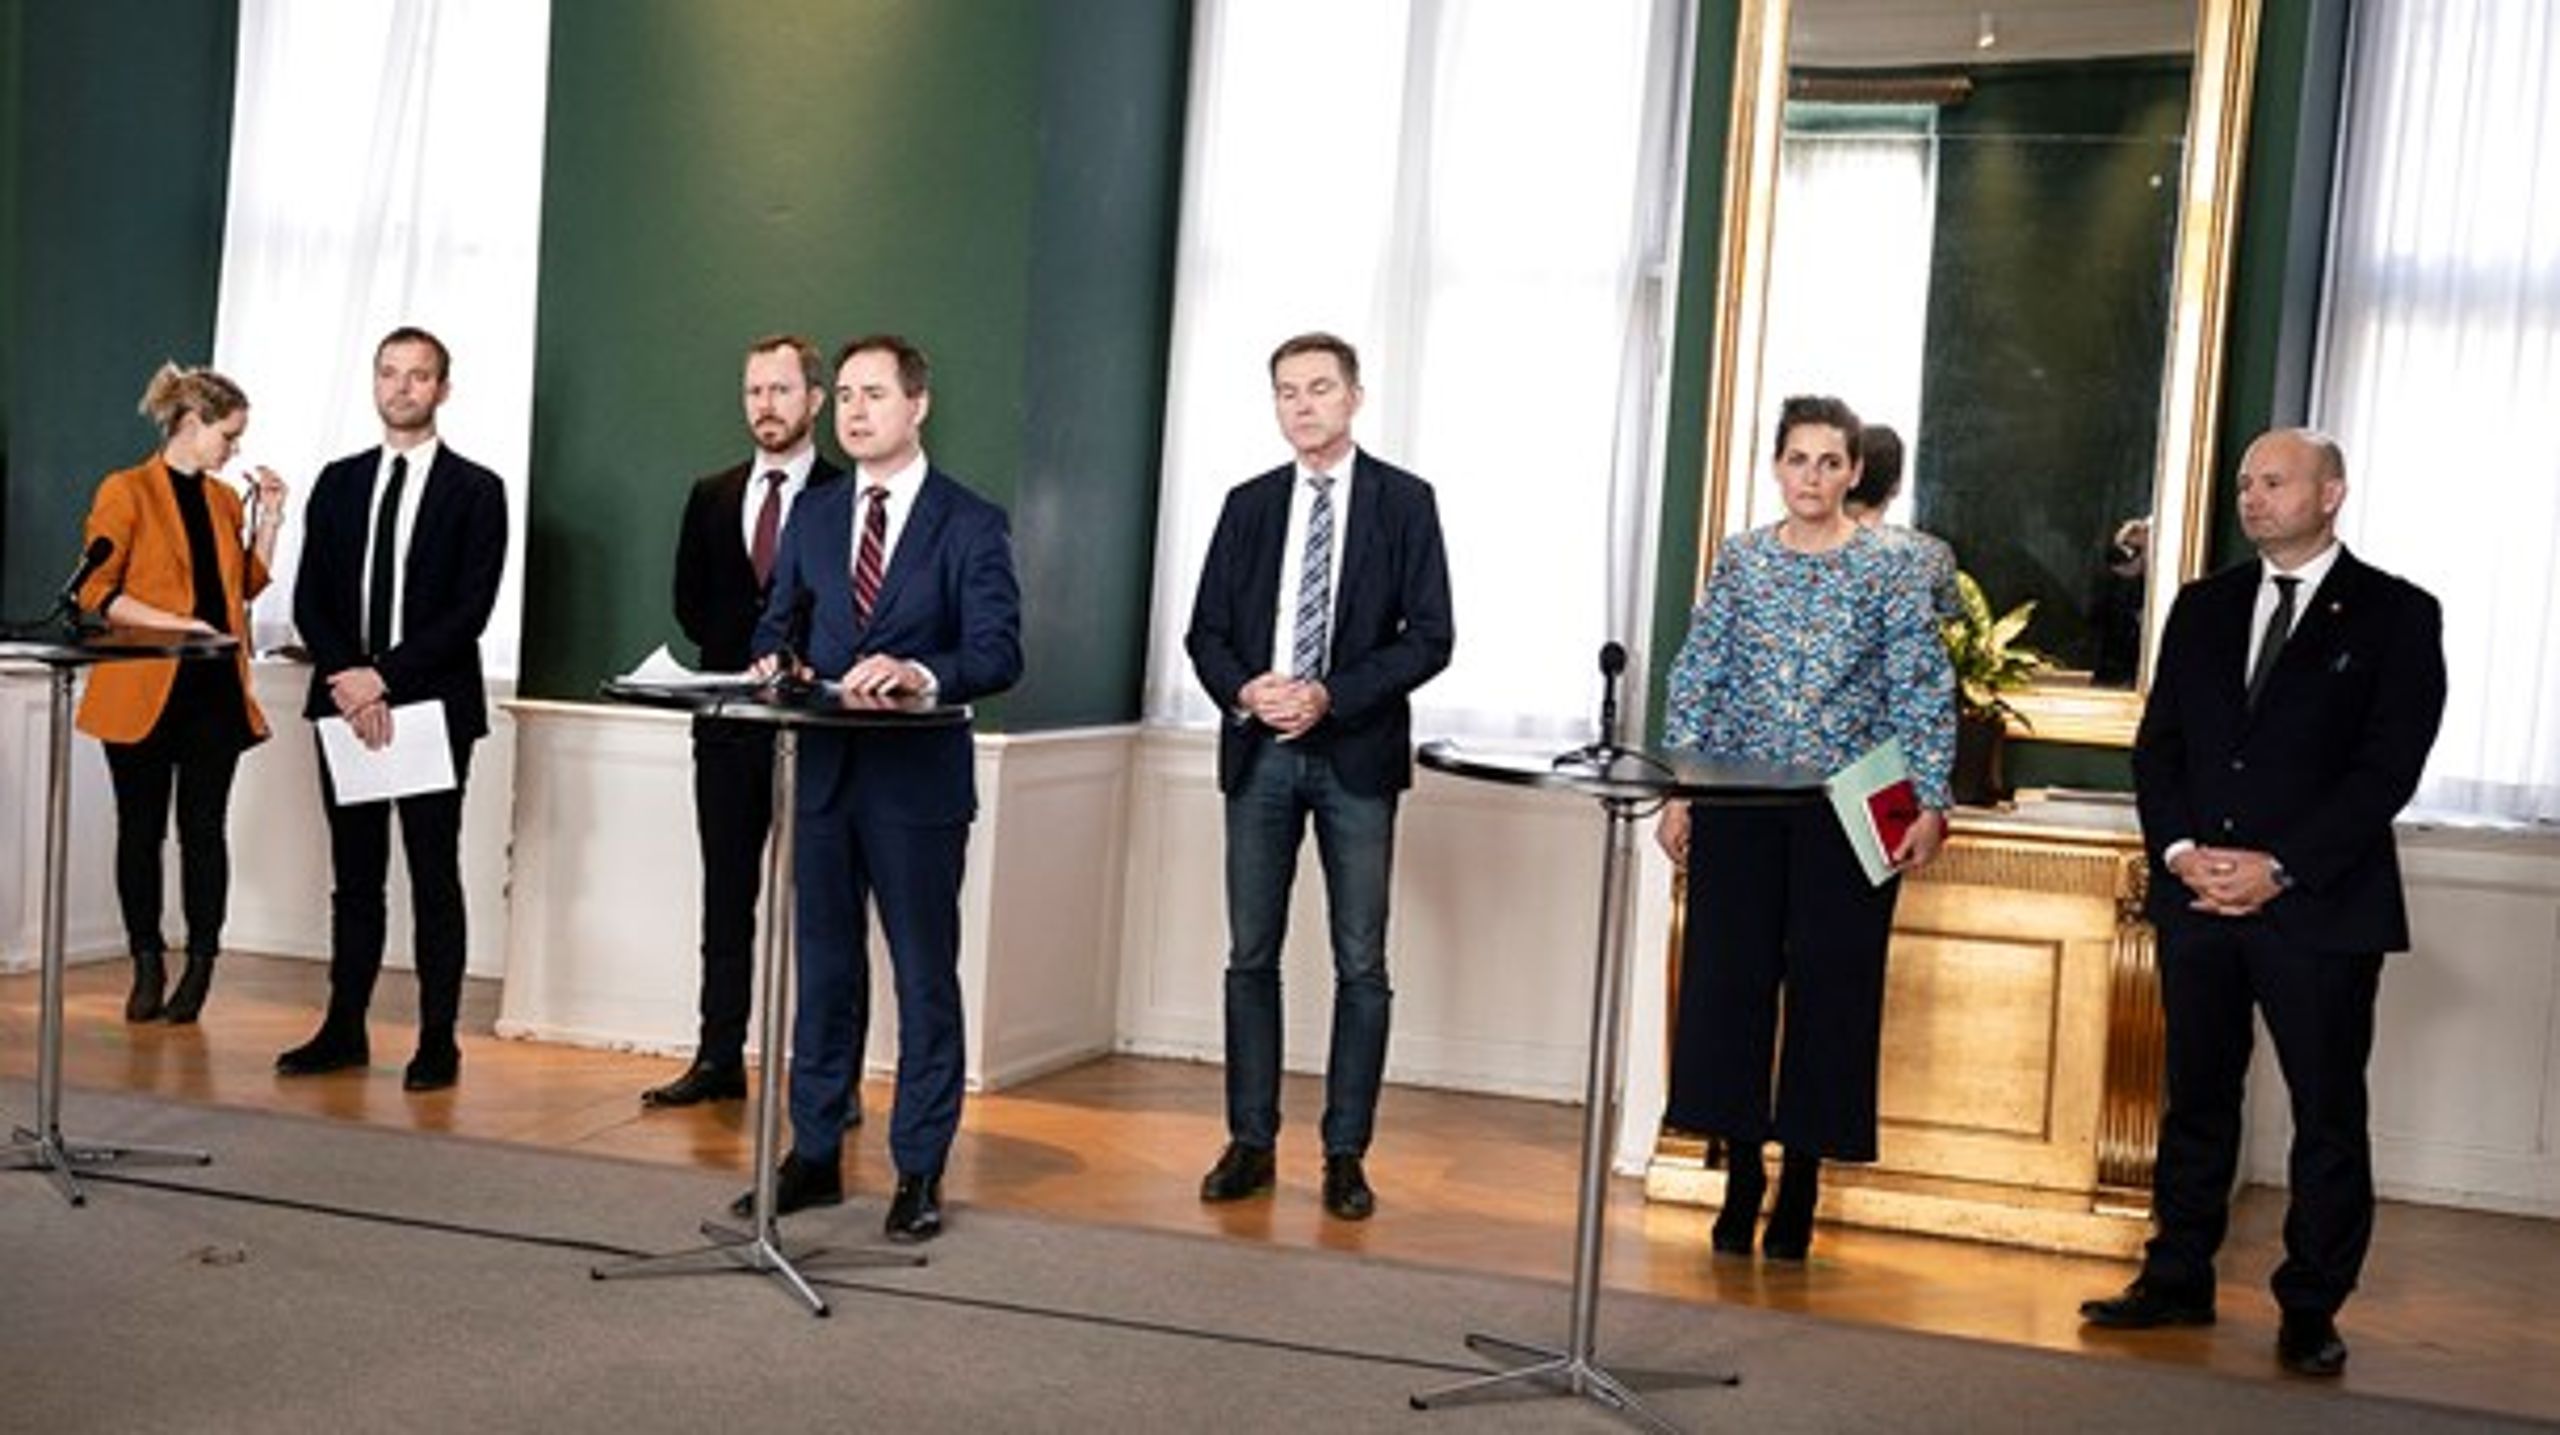 Finansminister Nicolai Wammen (S)&nbsp;var samlet med alle Folketingets partiledere i Finansministeriet til præsentation af den historisk store hjælpepakke.